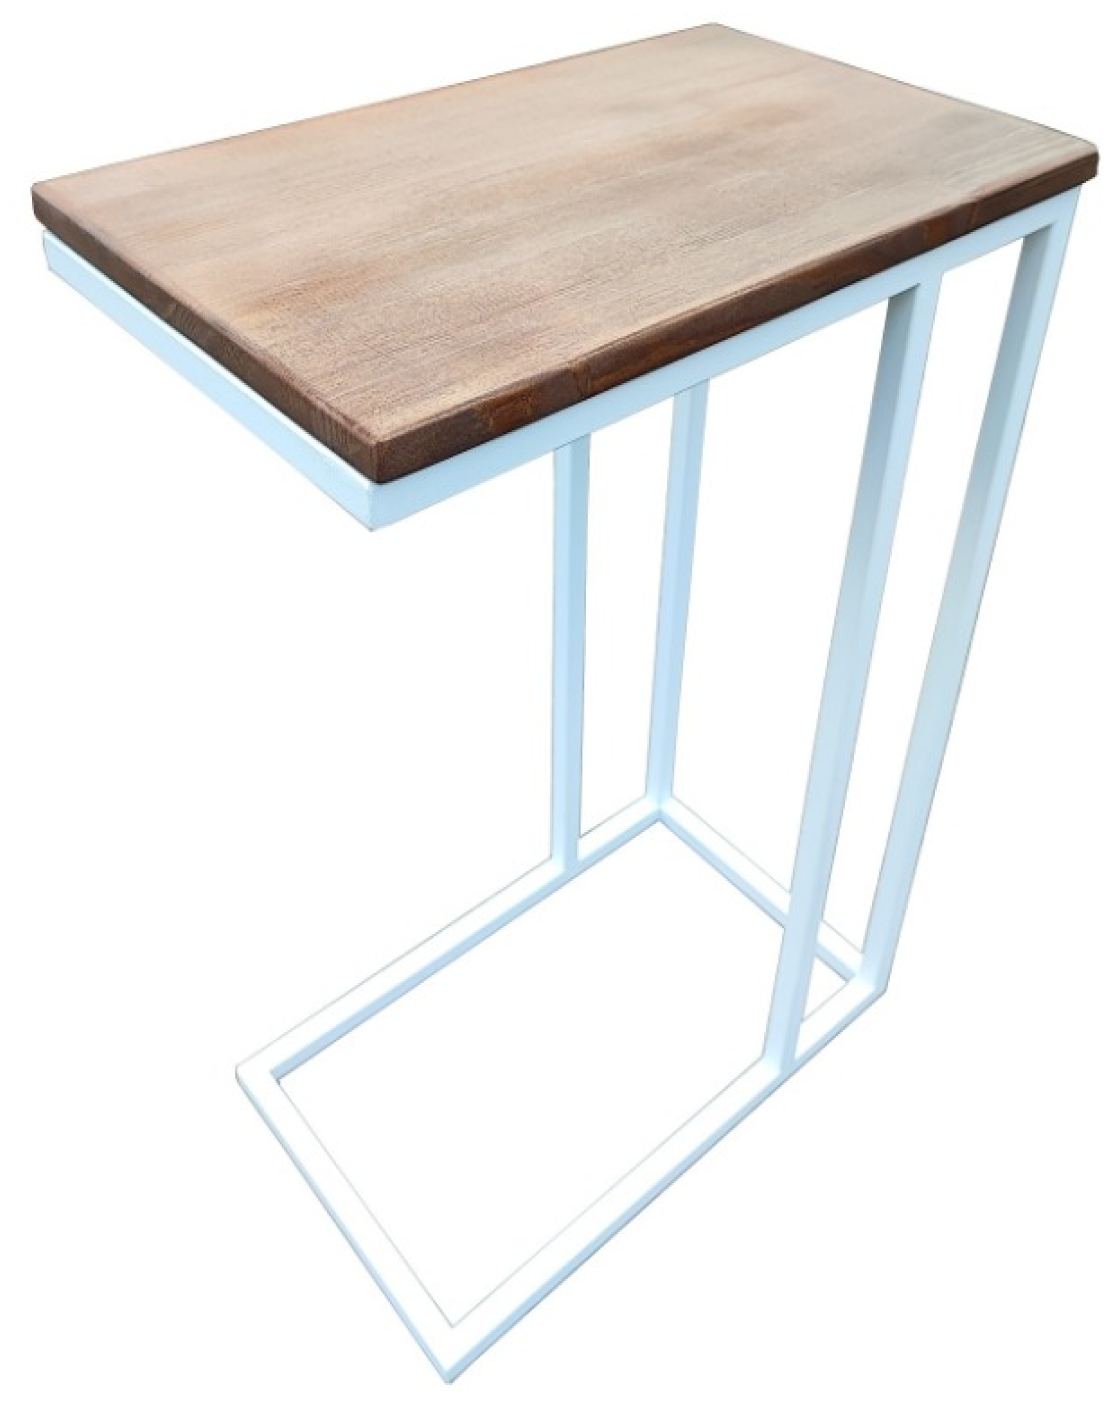 Приставной столик из натурального дерева и стали журнальный столик в стиле лофт 31*50*70(В)см